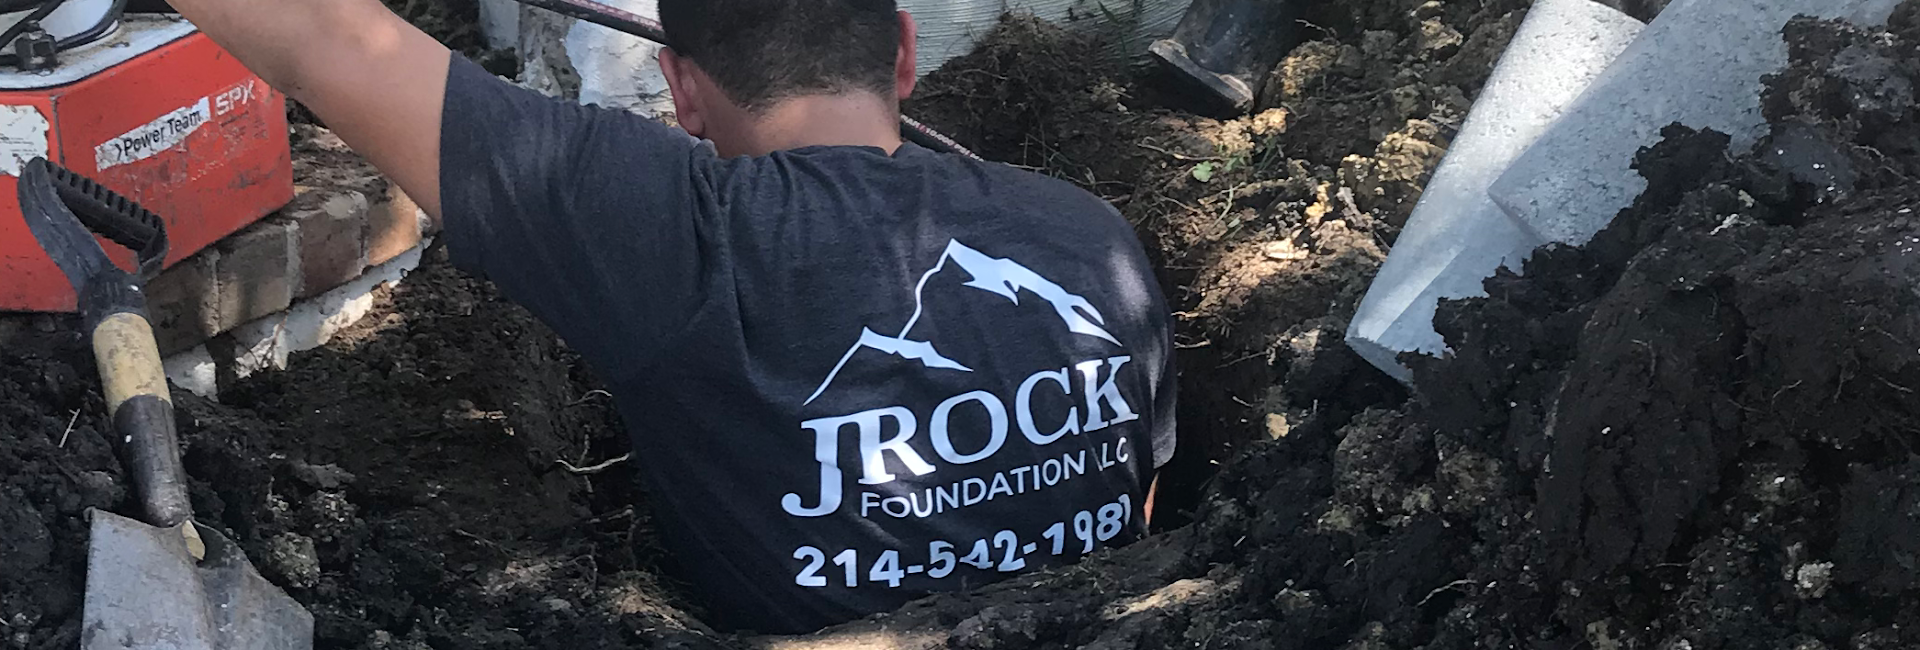 JRock Foundation Repair 6